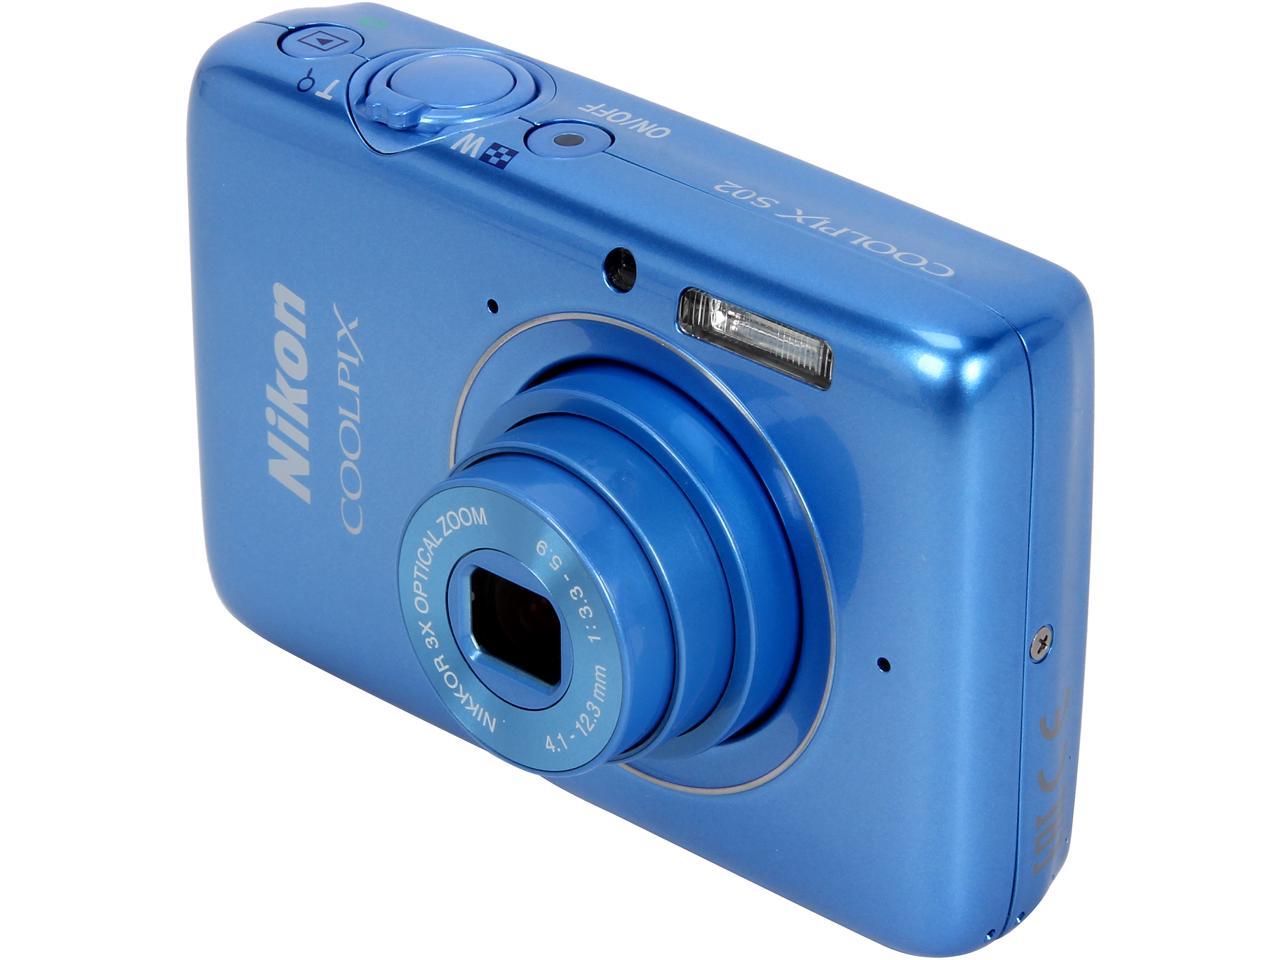 Nikon COOLPIX S02 Blue 13.2 MP Digital Camera HDTV Output - Newegg.com